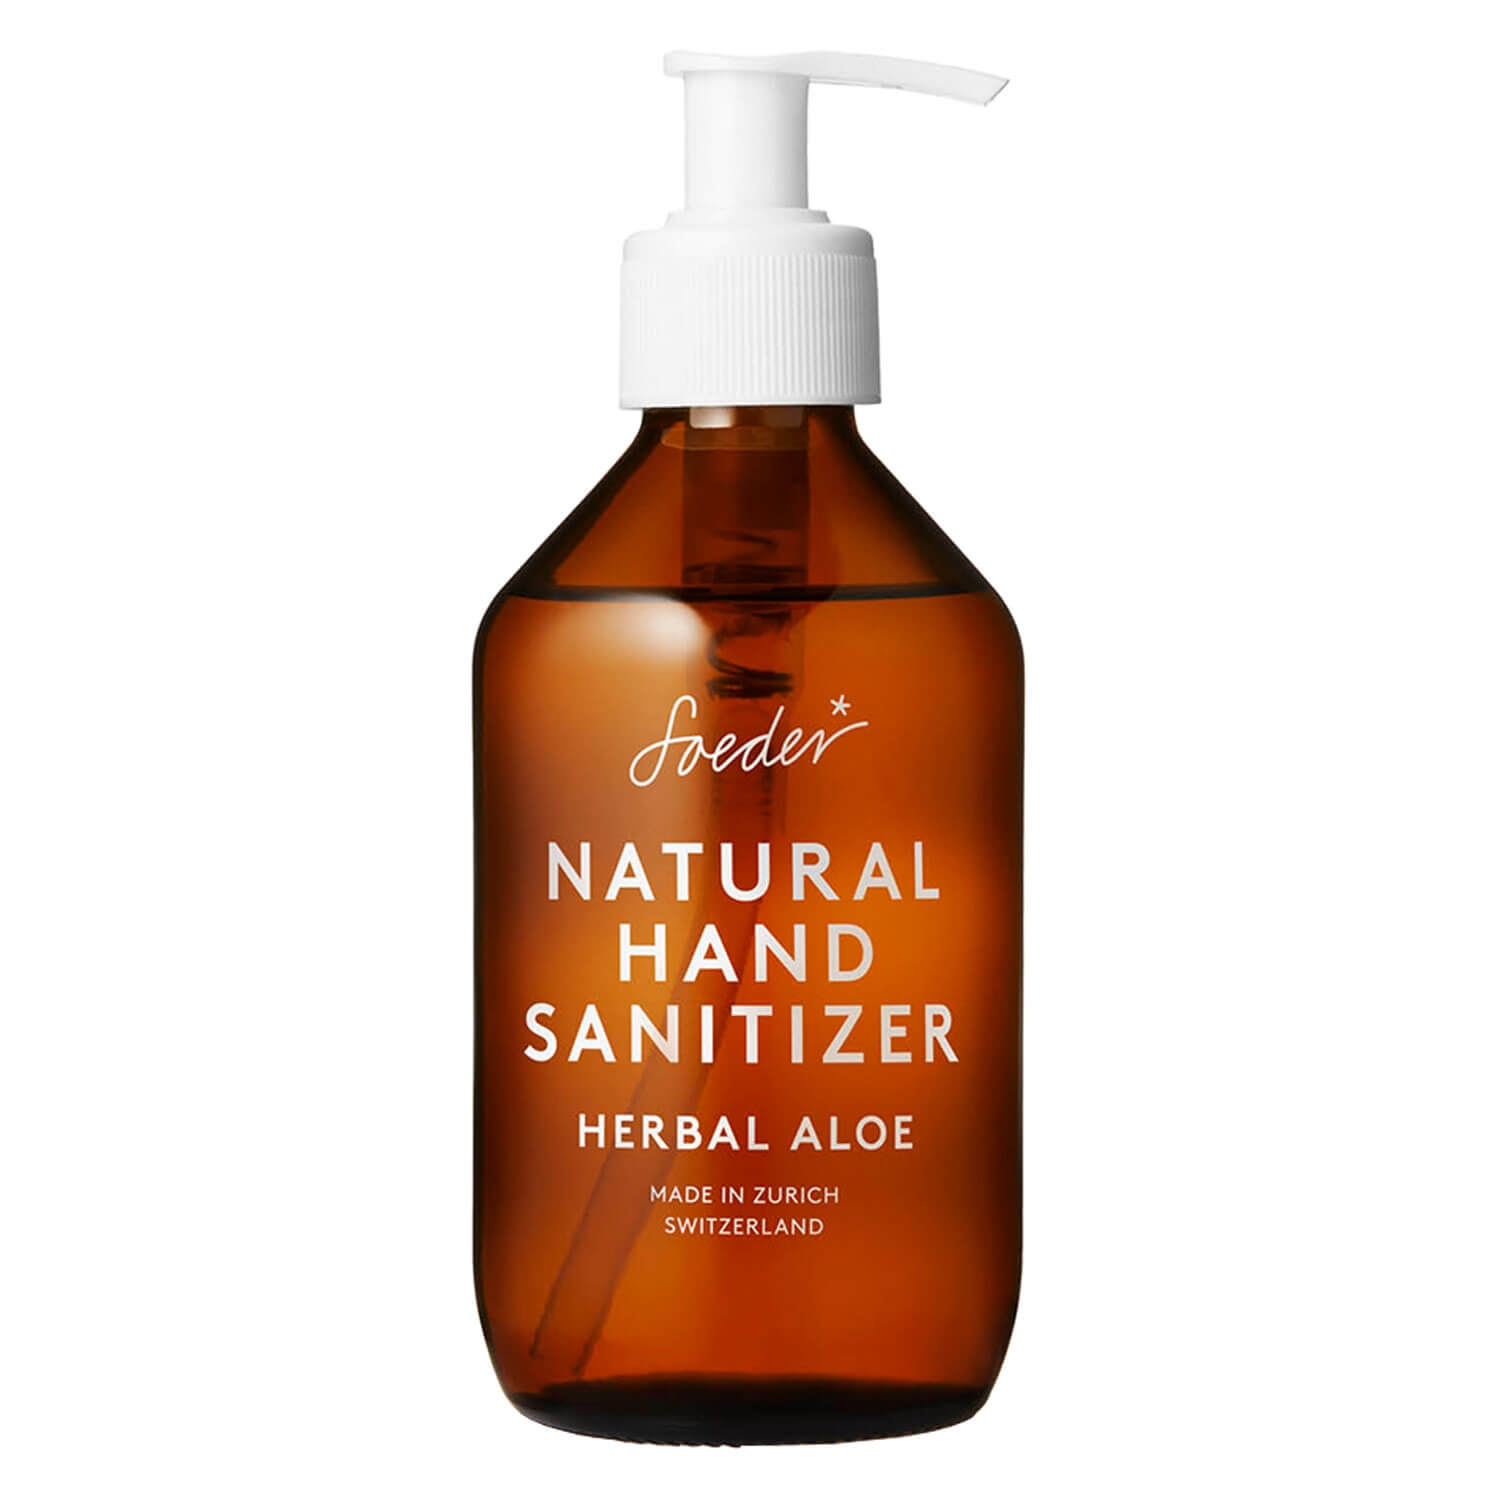 Produktbild von Soeder - Natural Hand Sanitizer Herbal Aloe